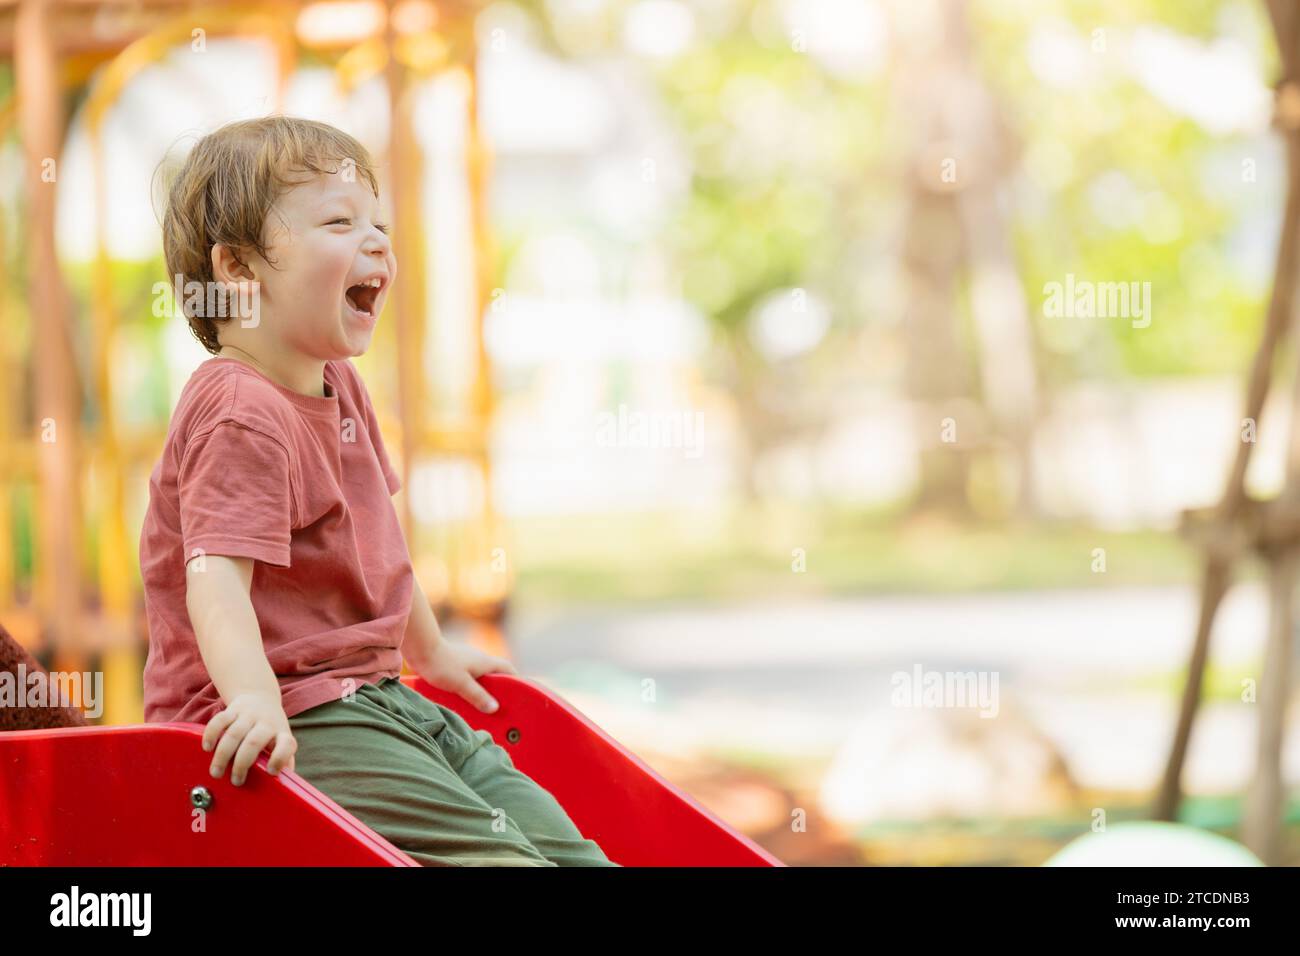 Fröhlicher, verspielter Junge, lustig, lachend, lächelndes Kind, genießen Sie die Aktivität auf dem Spielplatz im Freien im Sommer. Stockfoto